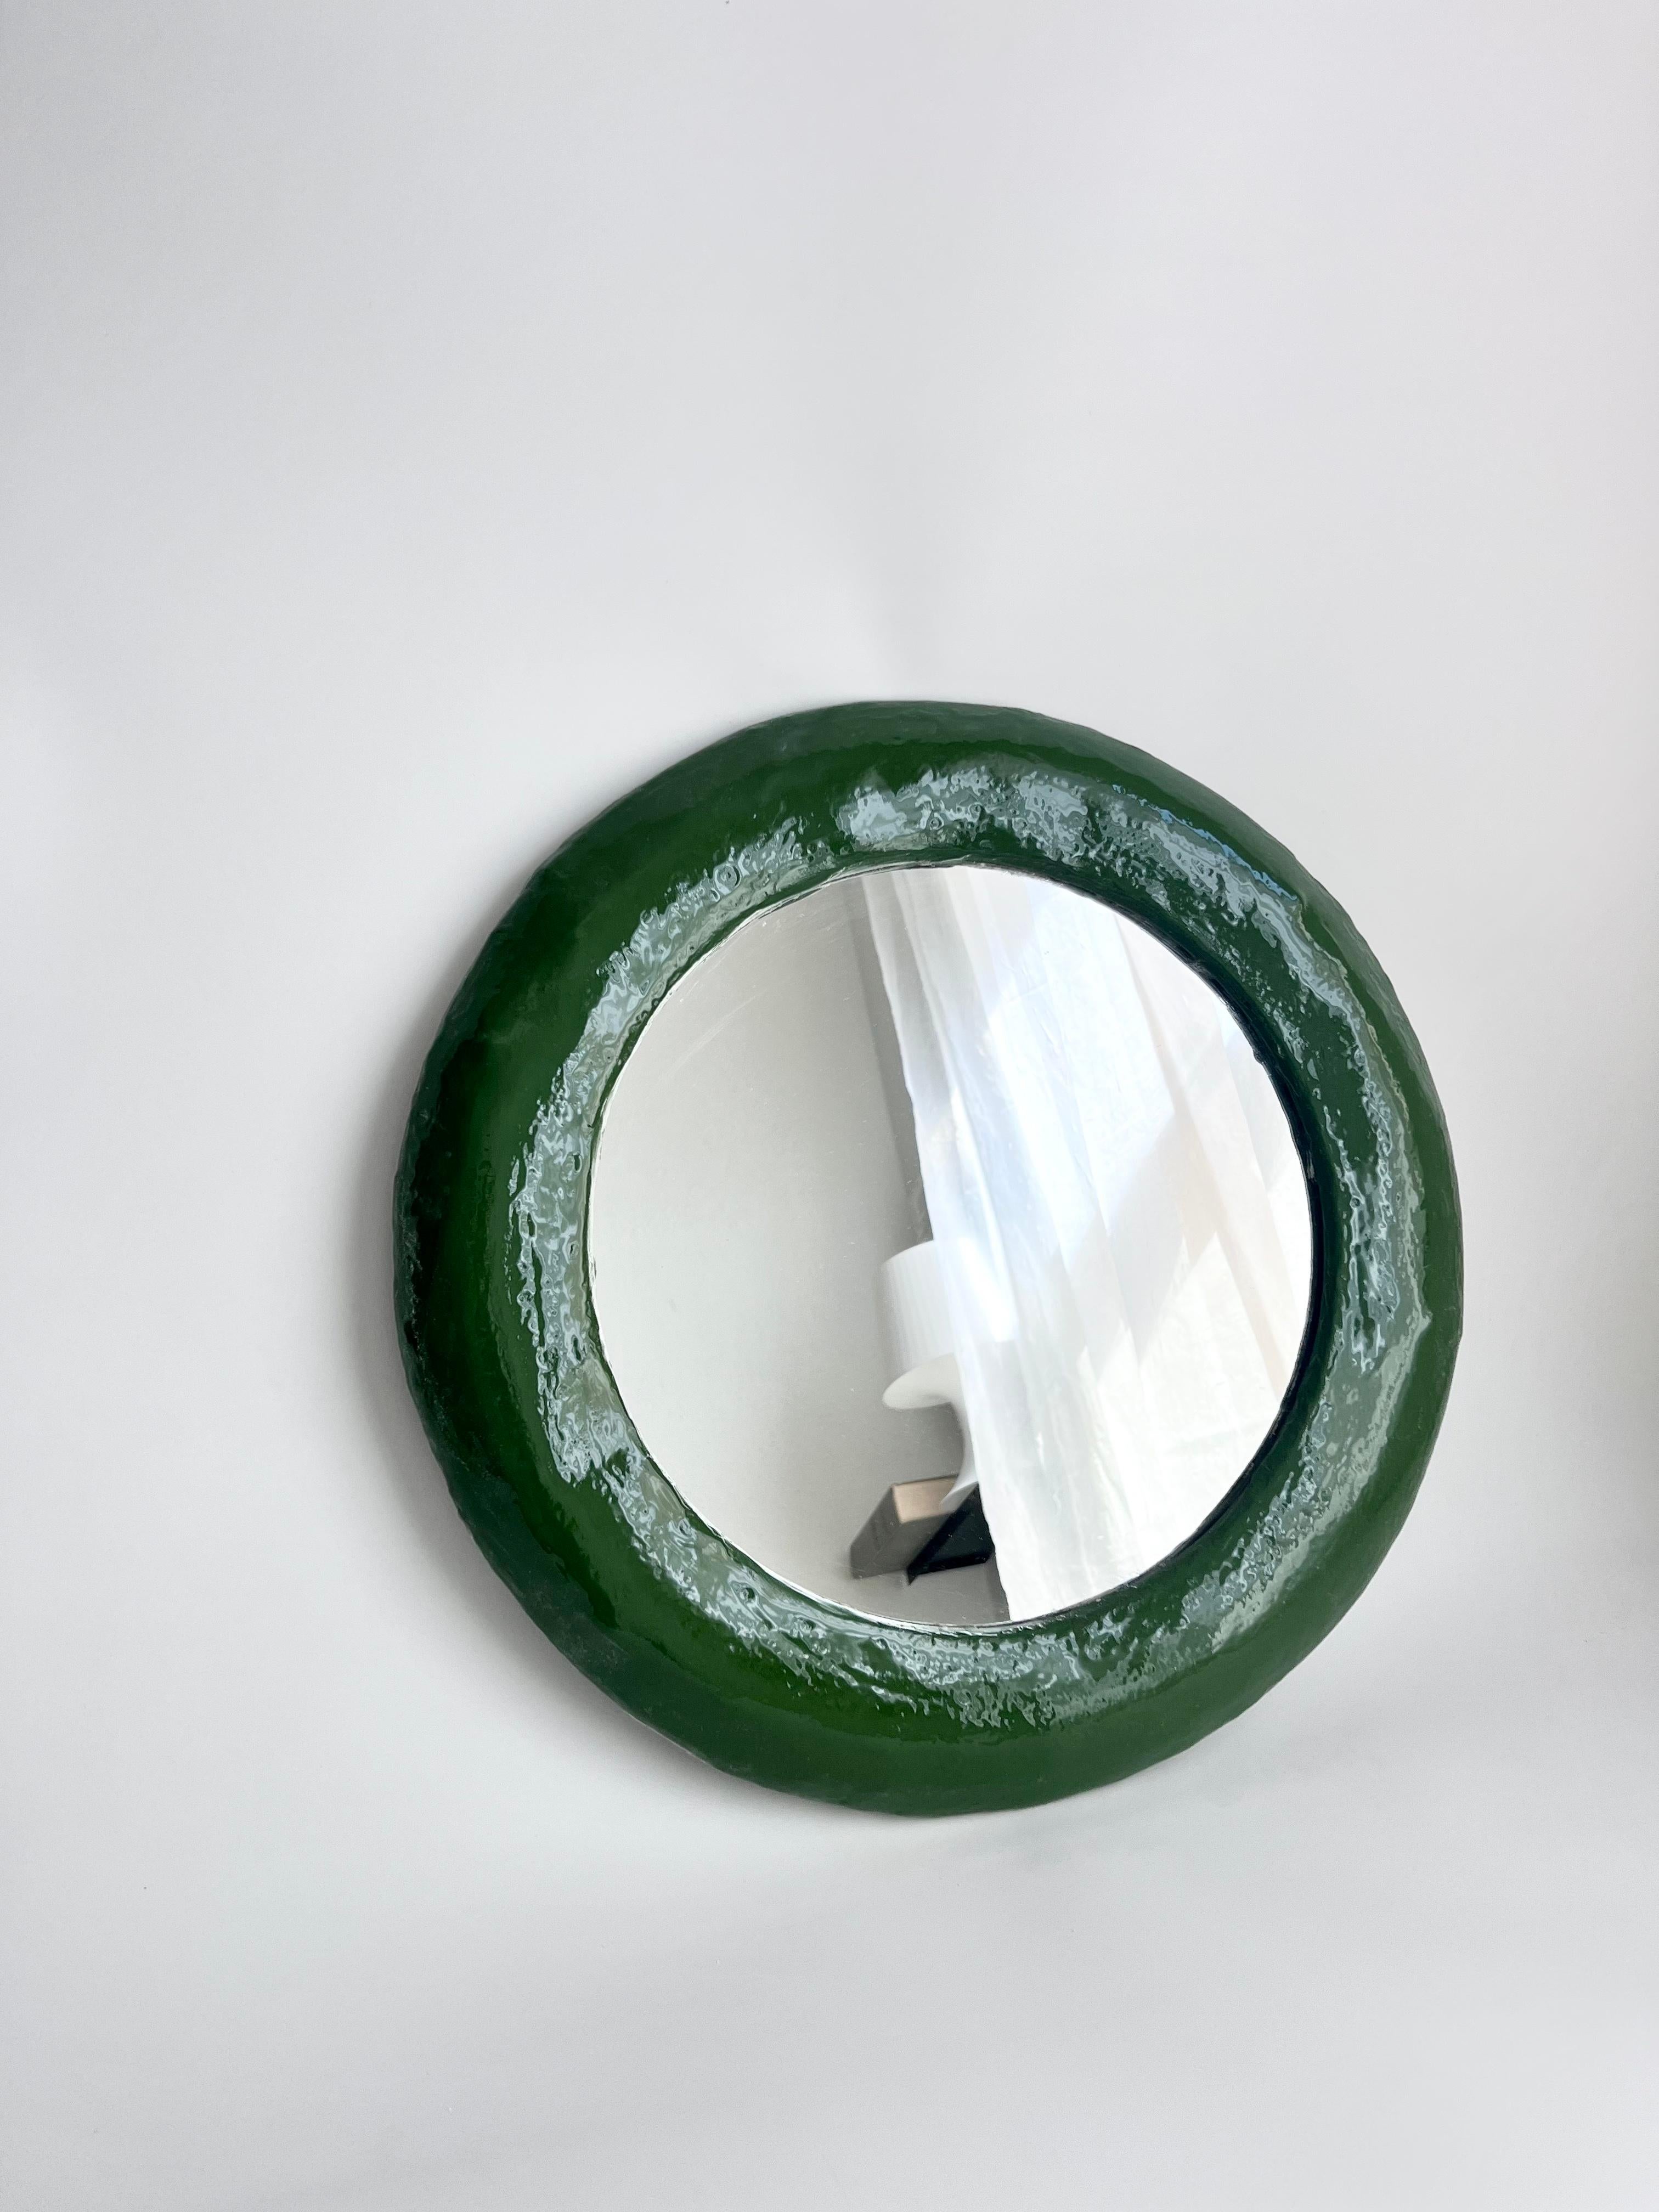 Grüner Spiegel aus Kunstharz von Studio Chora. Dieser Artikel wird in Handarbeit aus einem Verbundstein auf Gipsbasis hergestellt. Der Steinverbundstoff ist haltbarer als frühere Versionen und hat eine hochglänzende Harzoberfläche. Nur für den